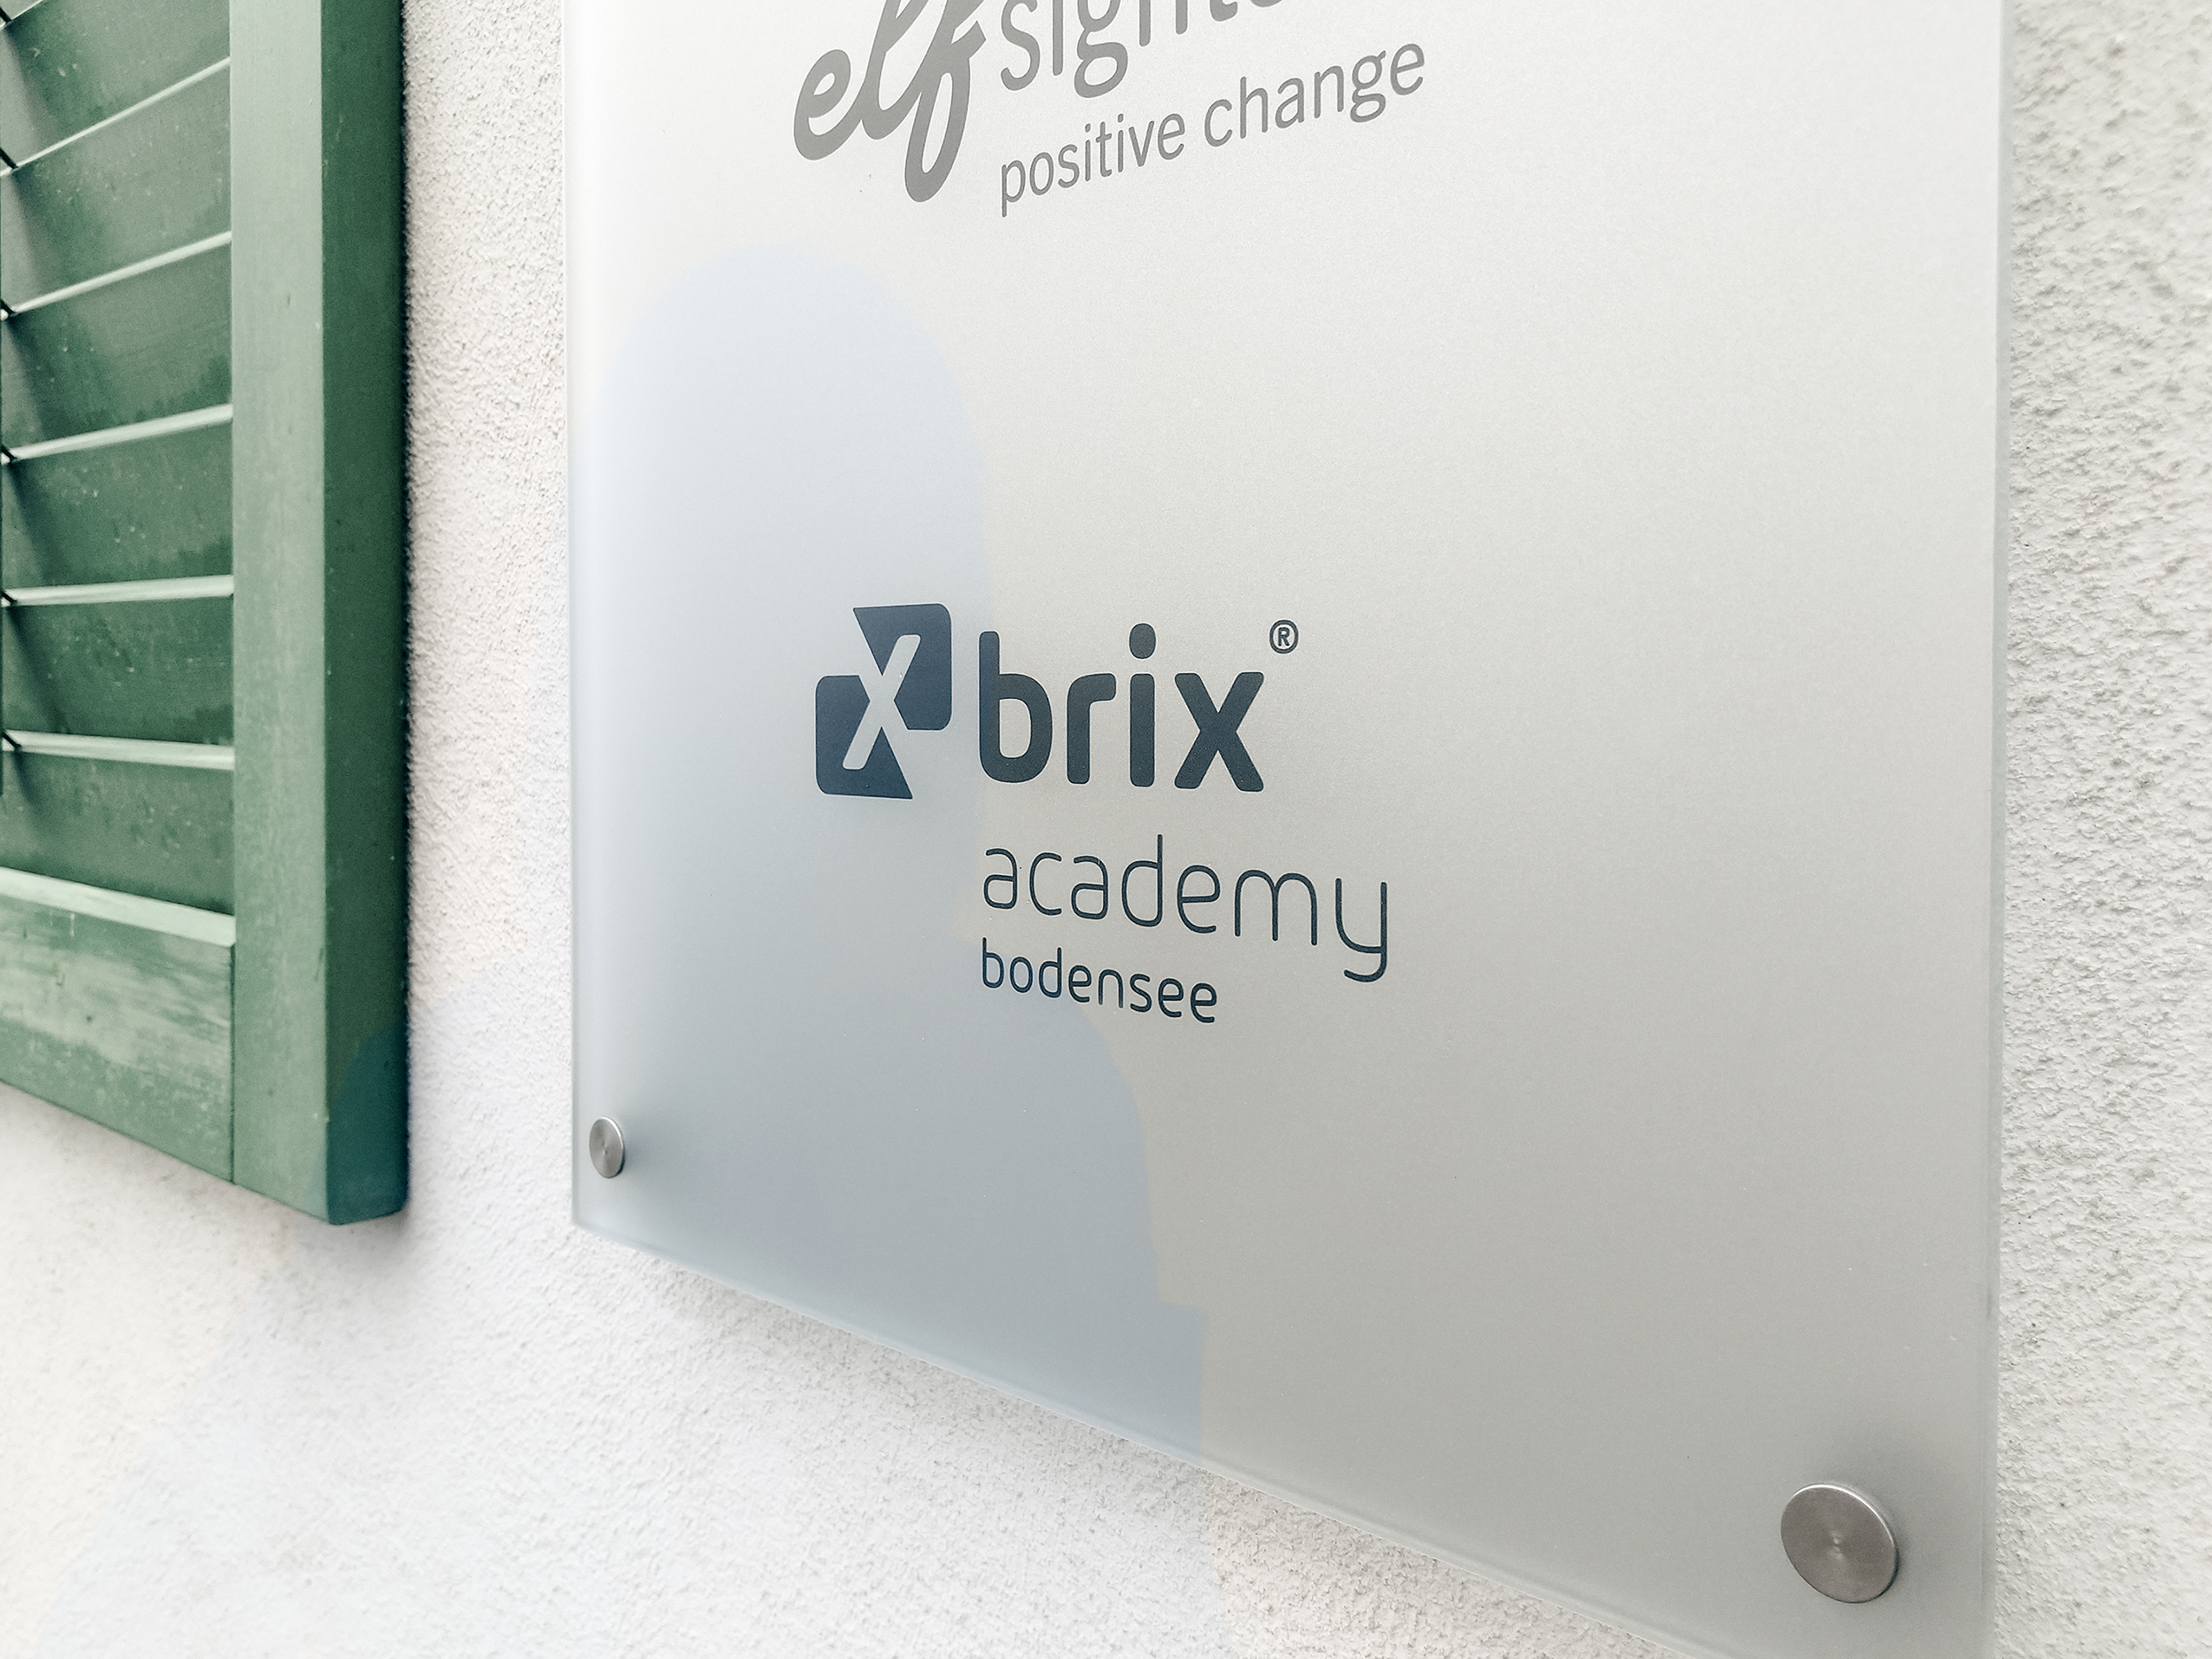 xBrix academy am Bodensee